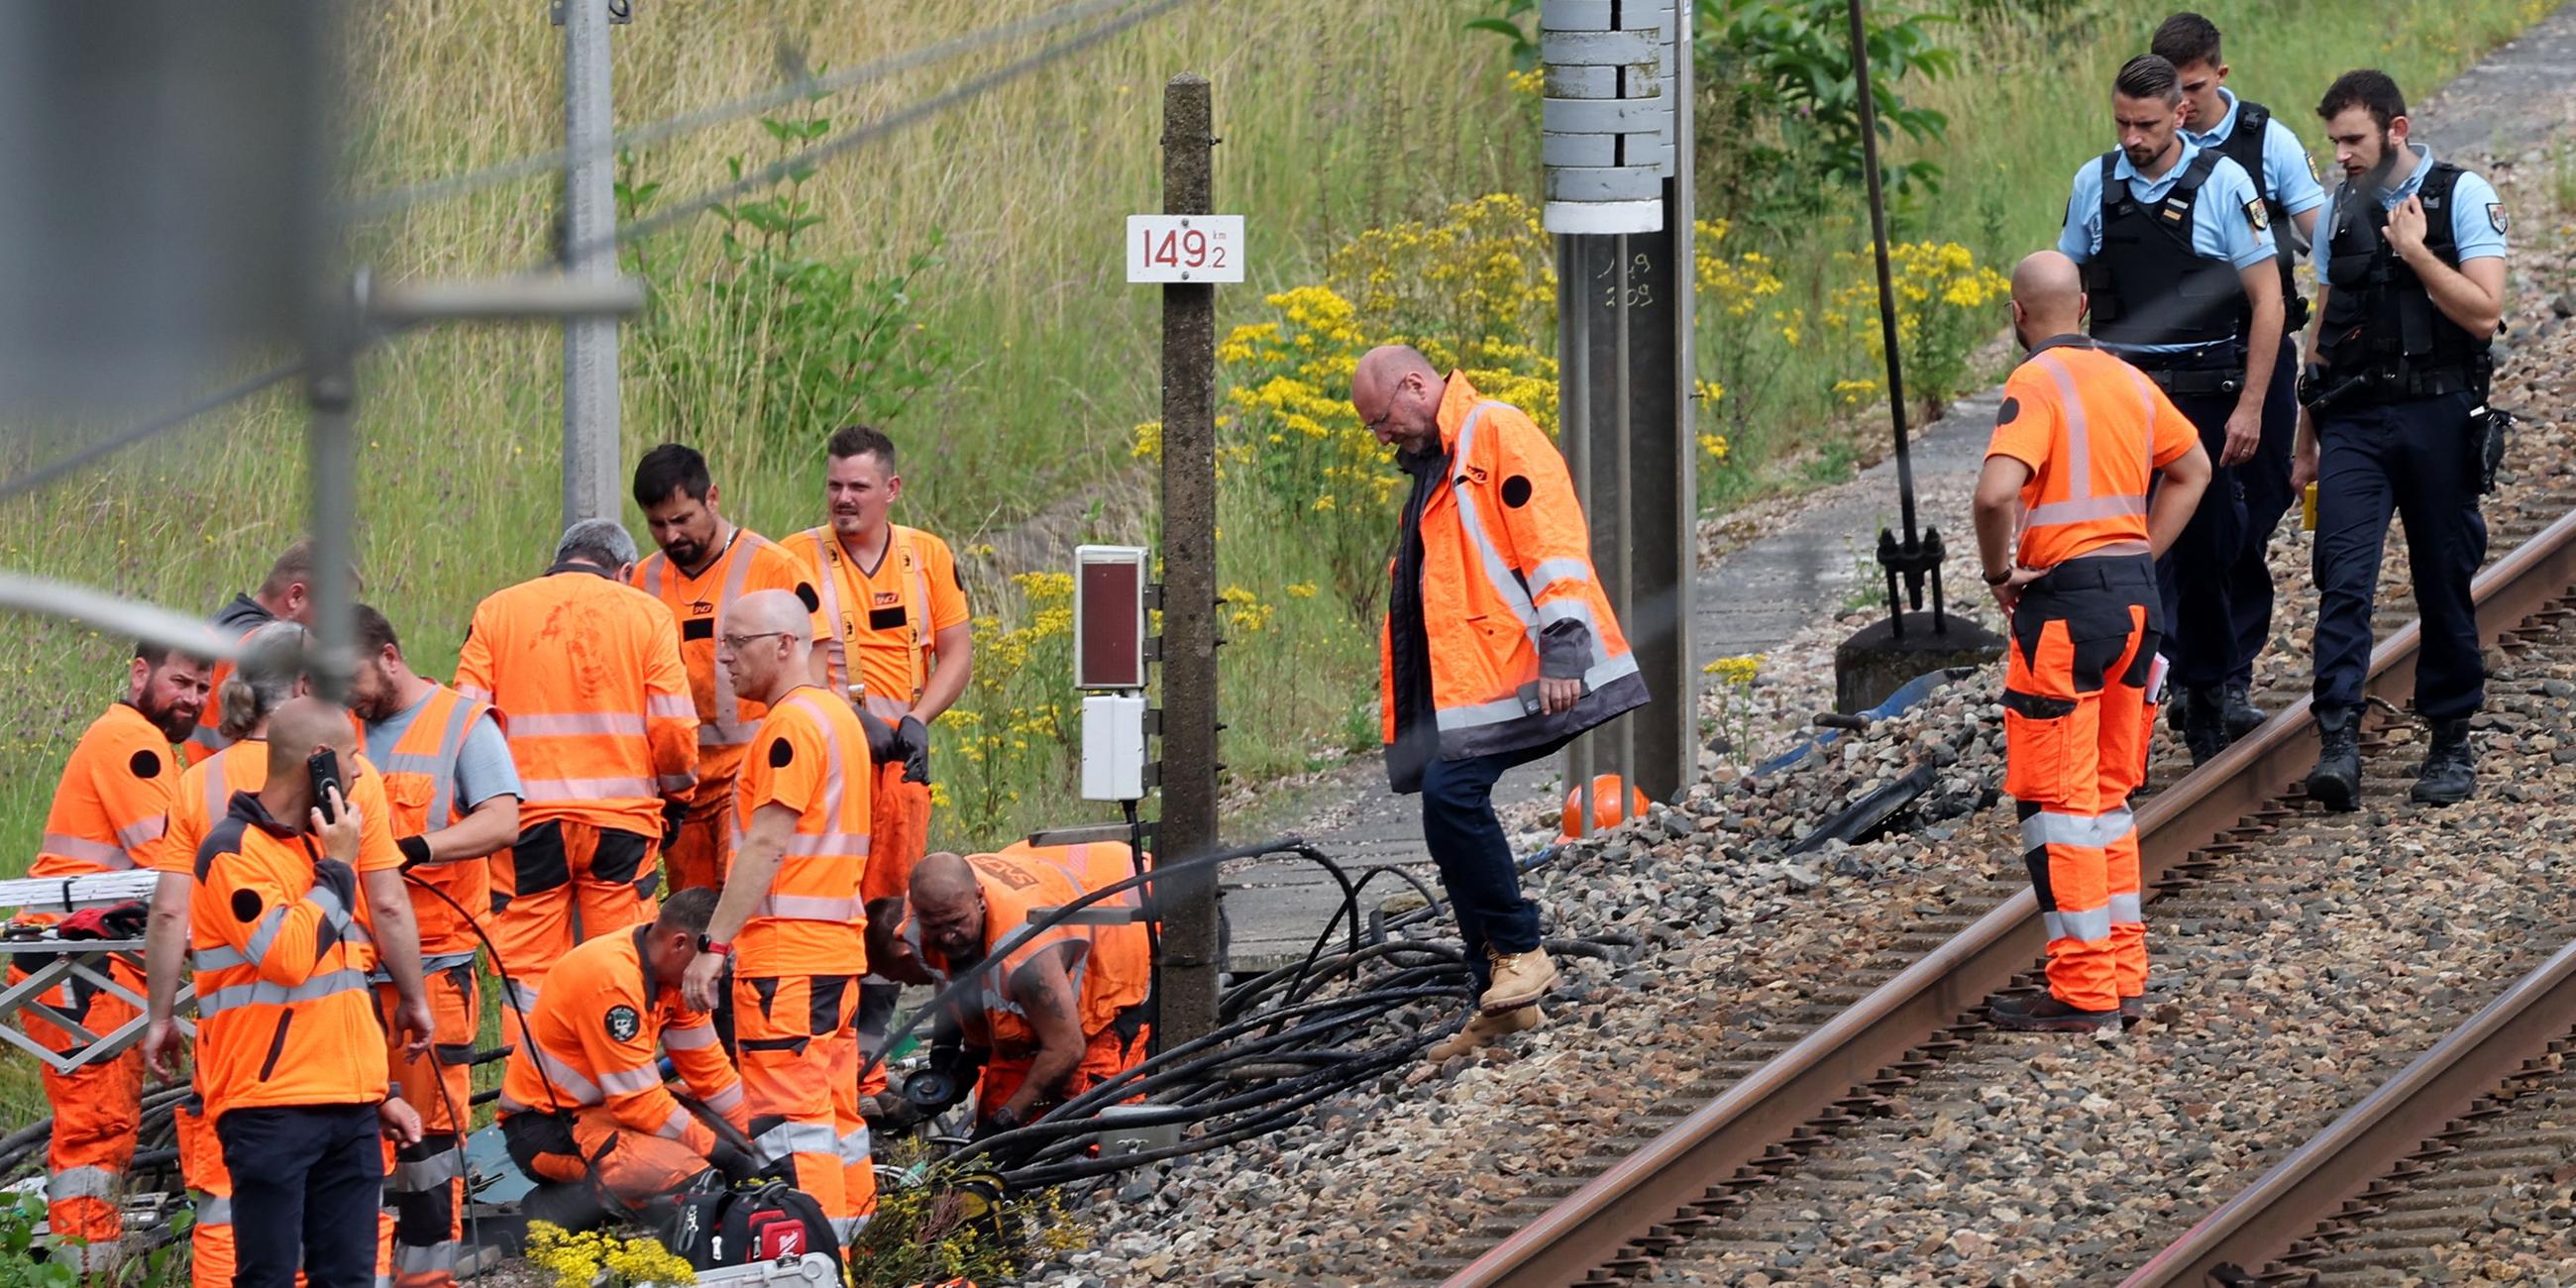 Mitarbeiter der SNCF und französische Gendarmen inspizieren die Sabotage an Kabeln der französischen Bahn.